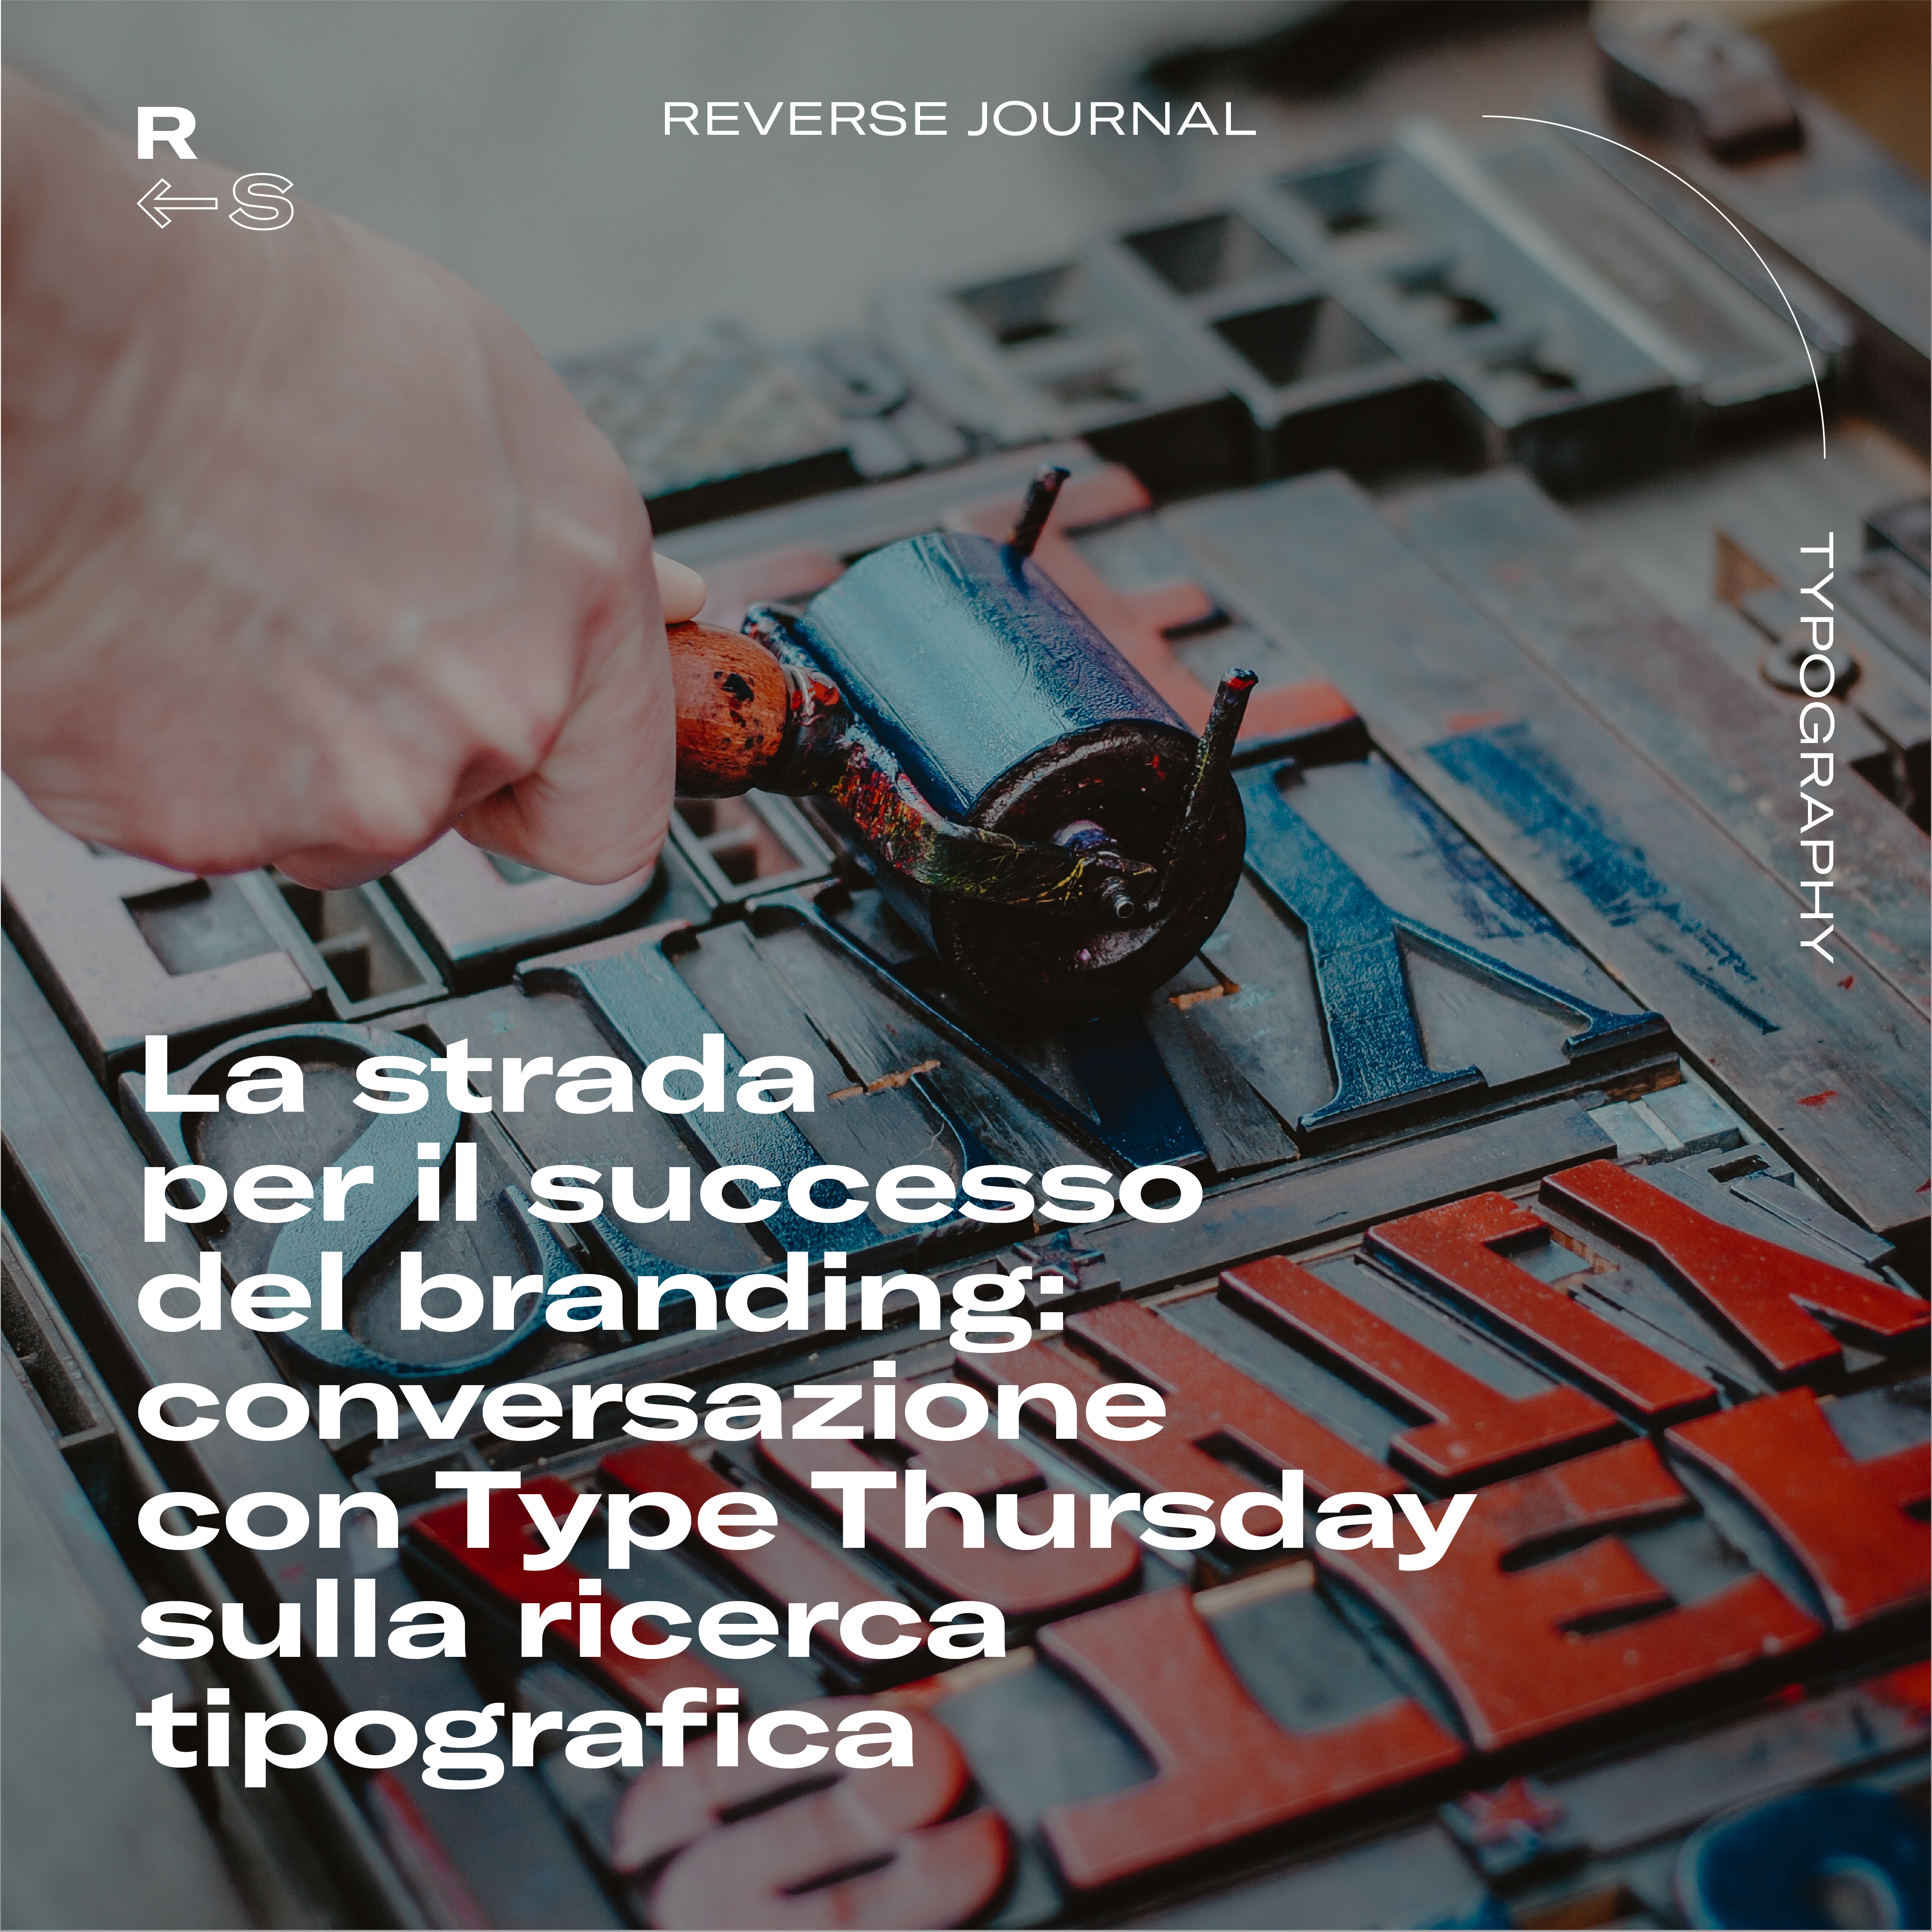 La strada per il successo del branding: conversazione con Type Thursday sulla ricerca tipografica